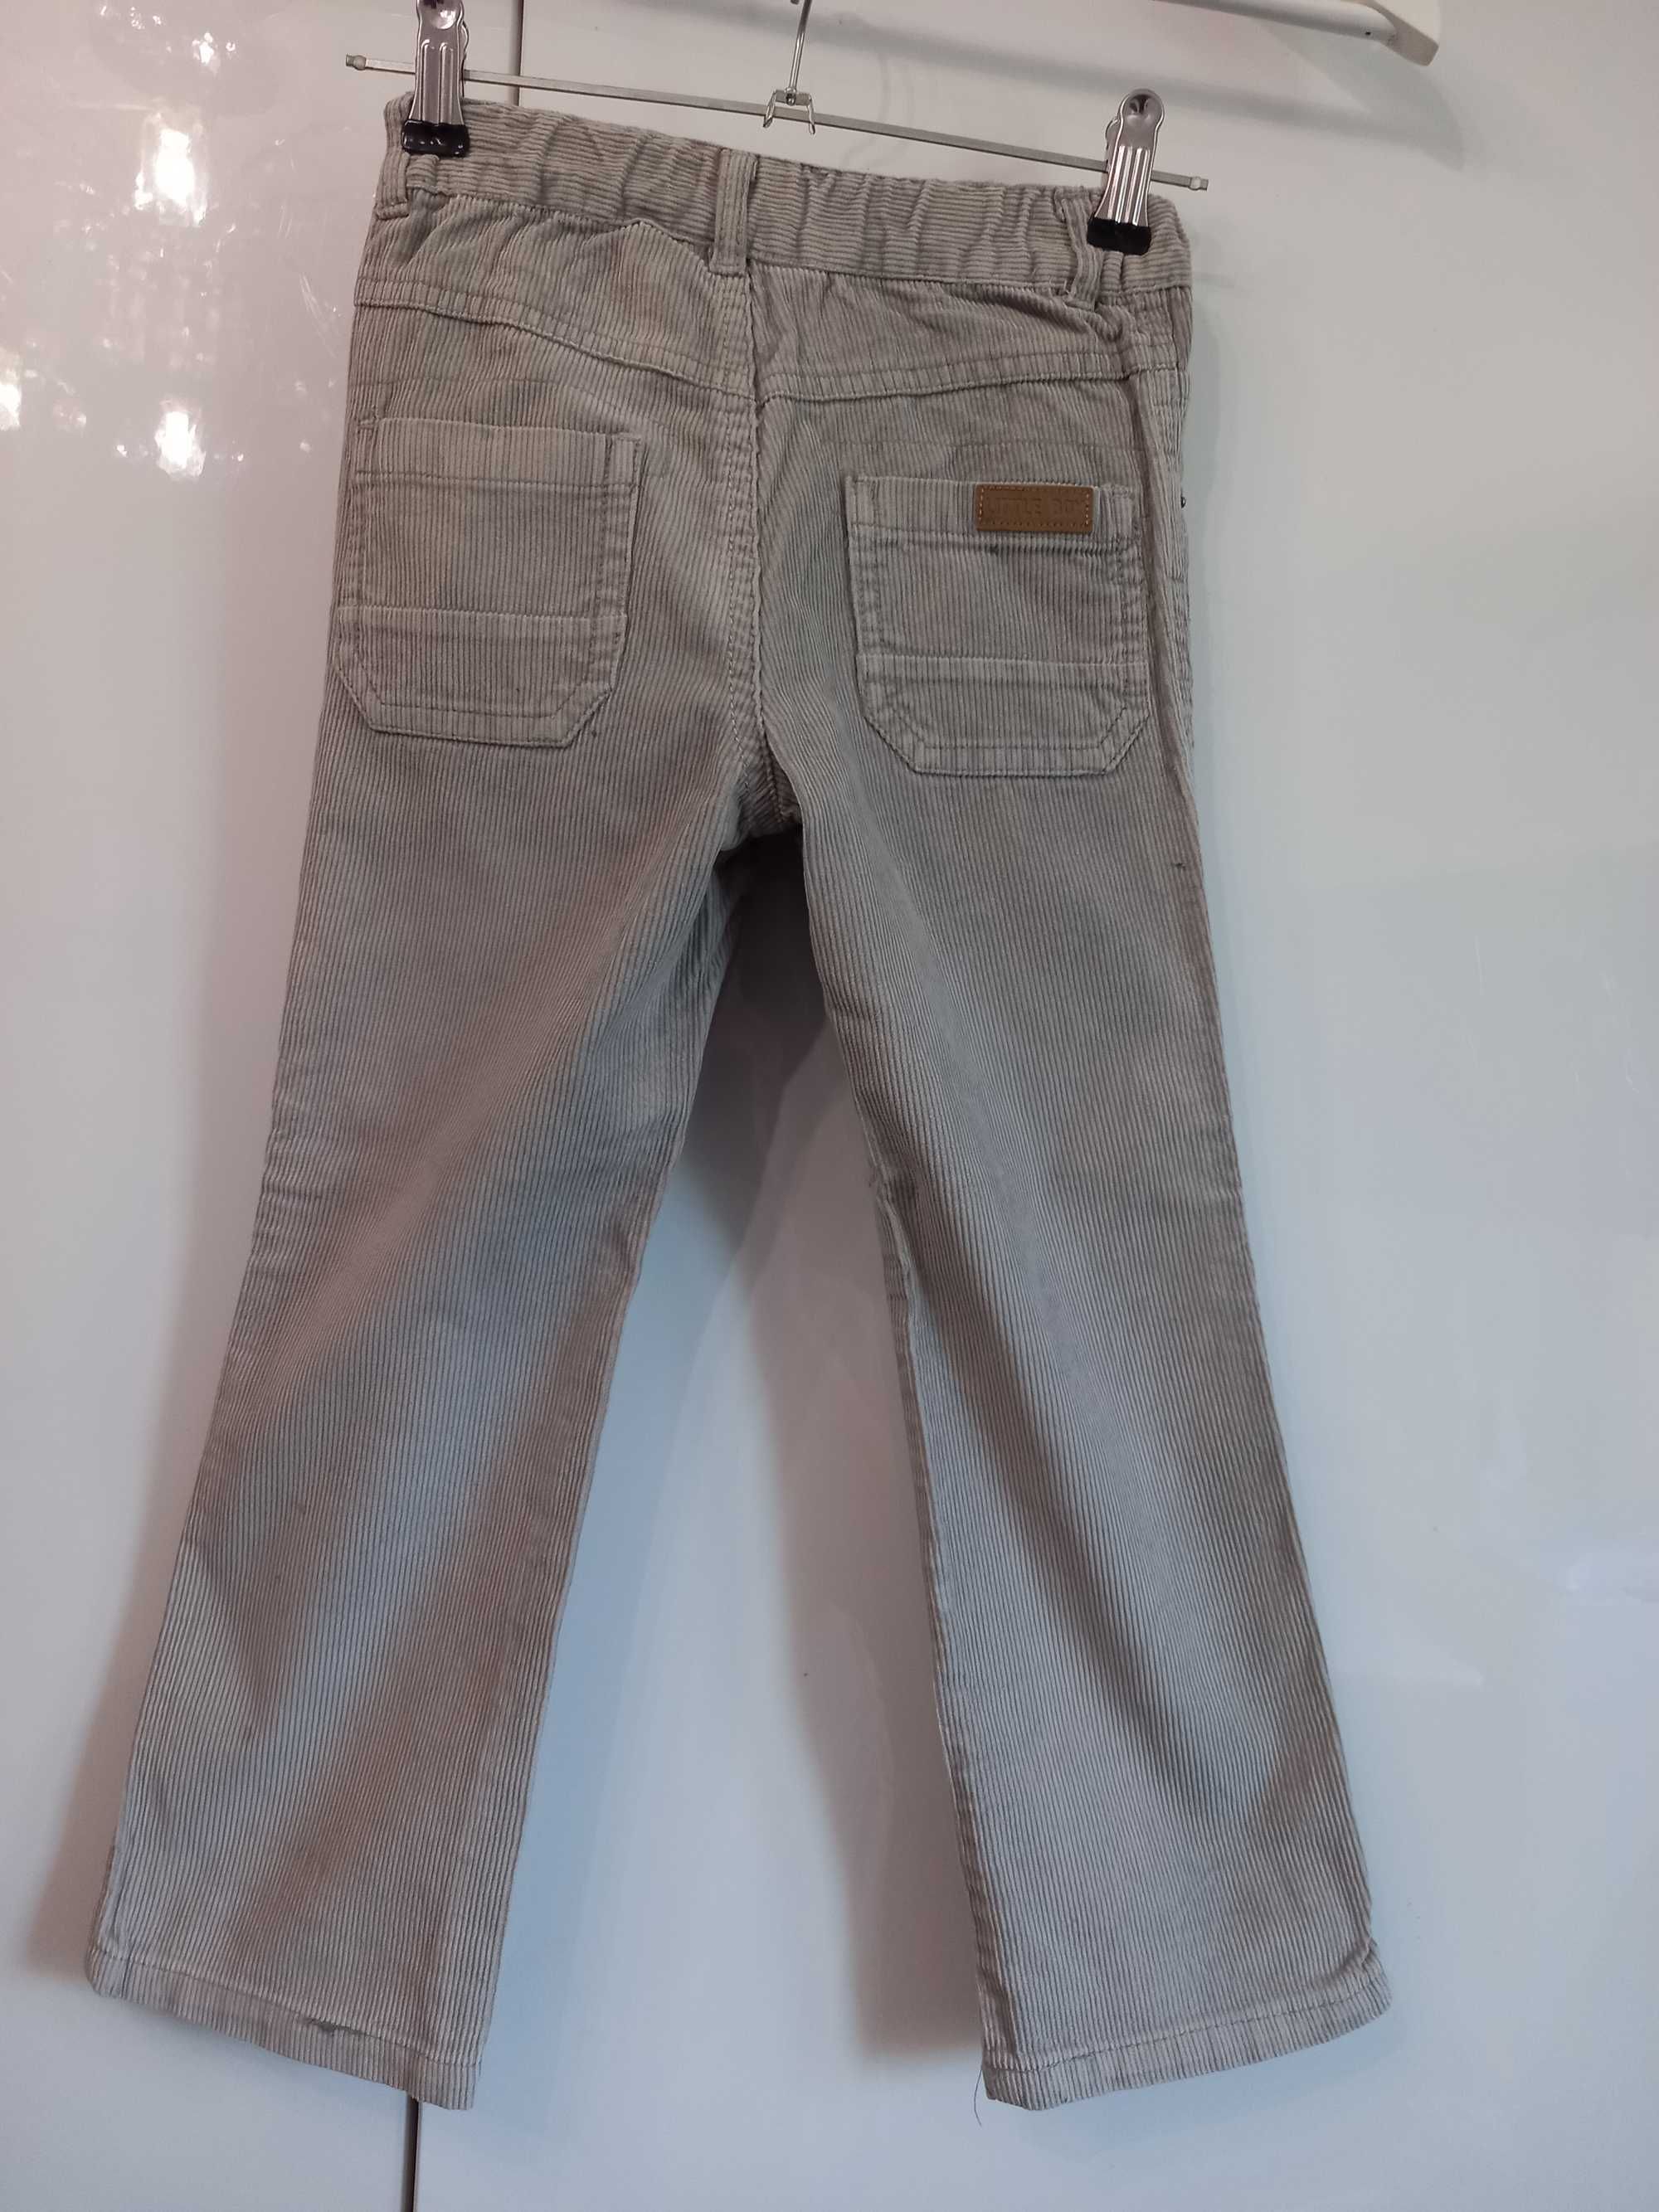 р. 110 - 116 KIDKANAI вельветовые штаны джинсы на 5 - 6 лет Франция